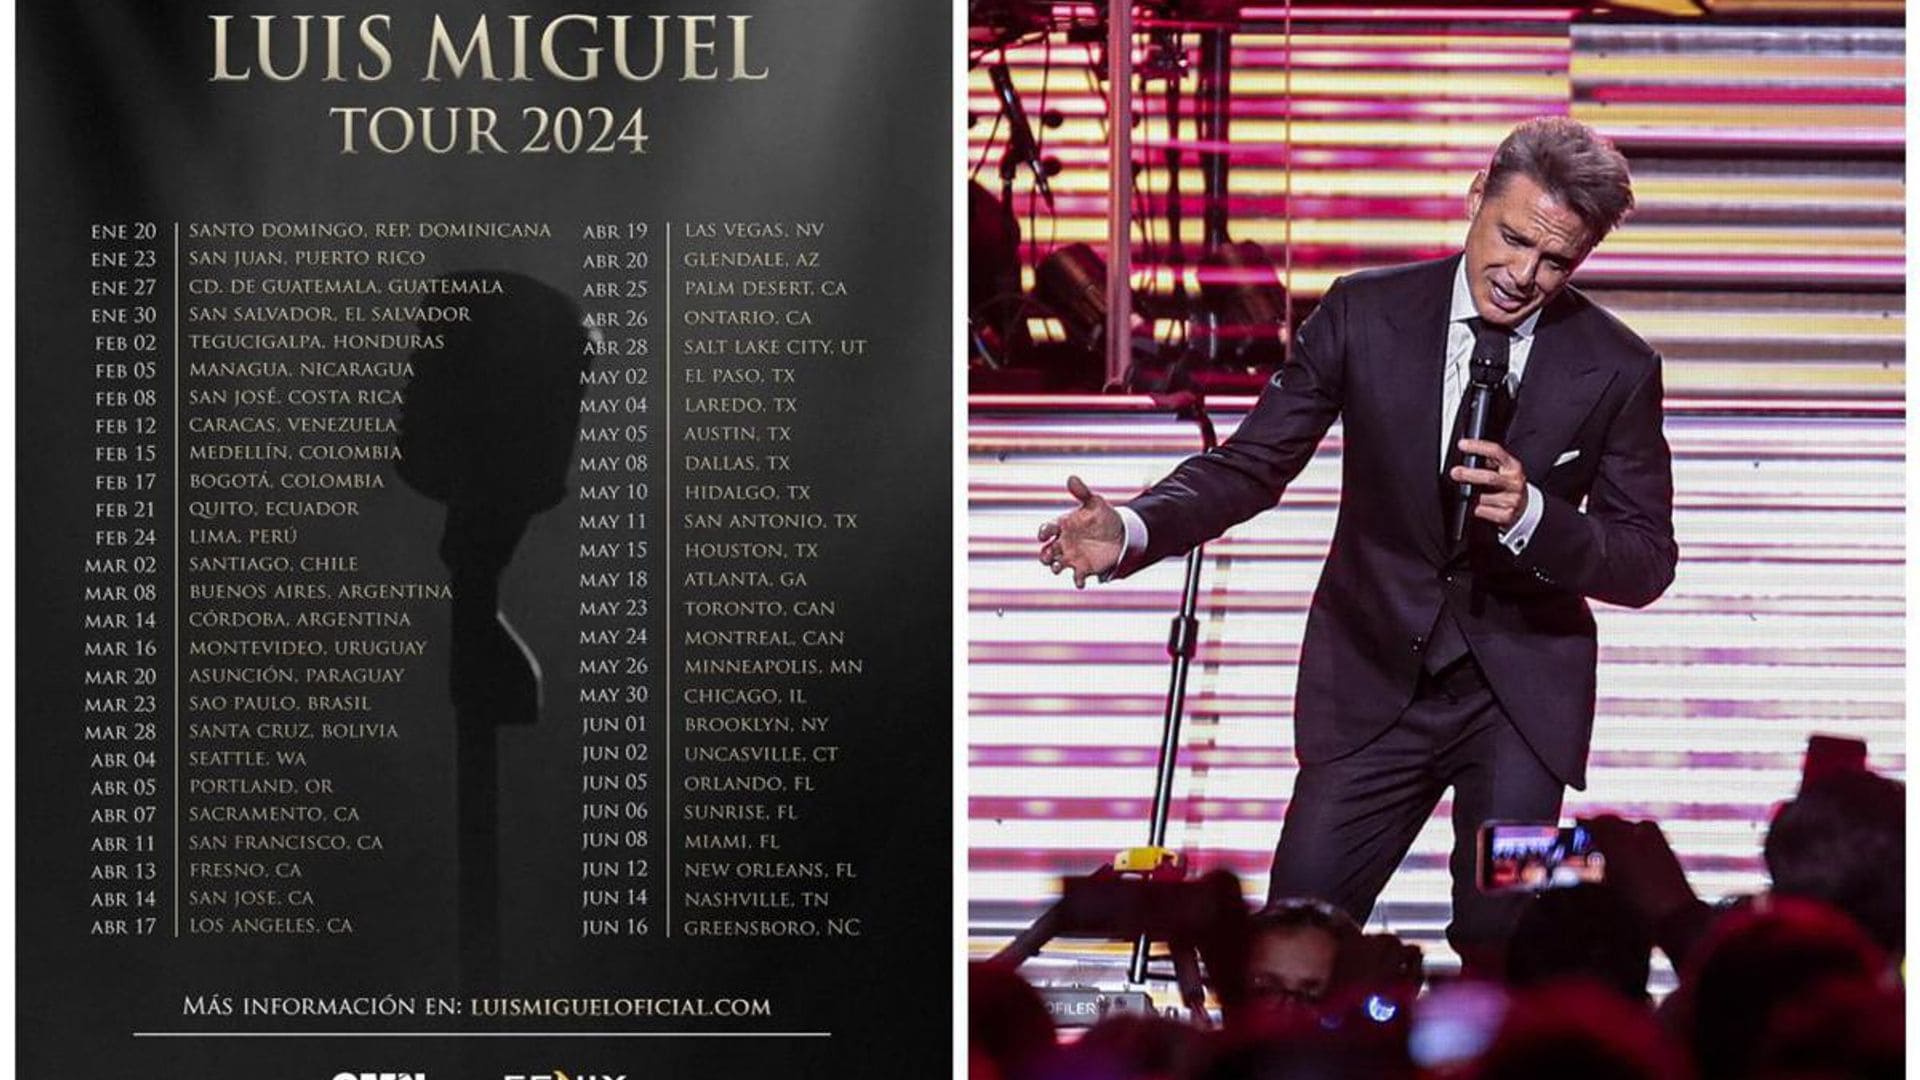 Luis Miguel Tour 2024